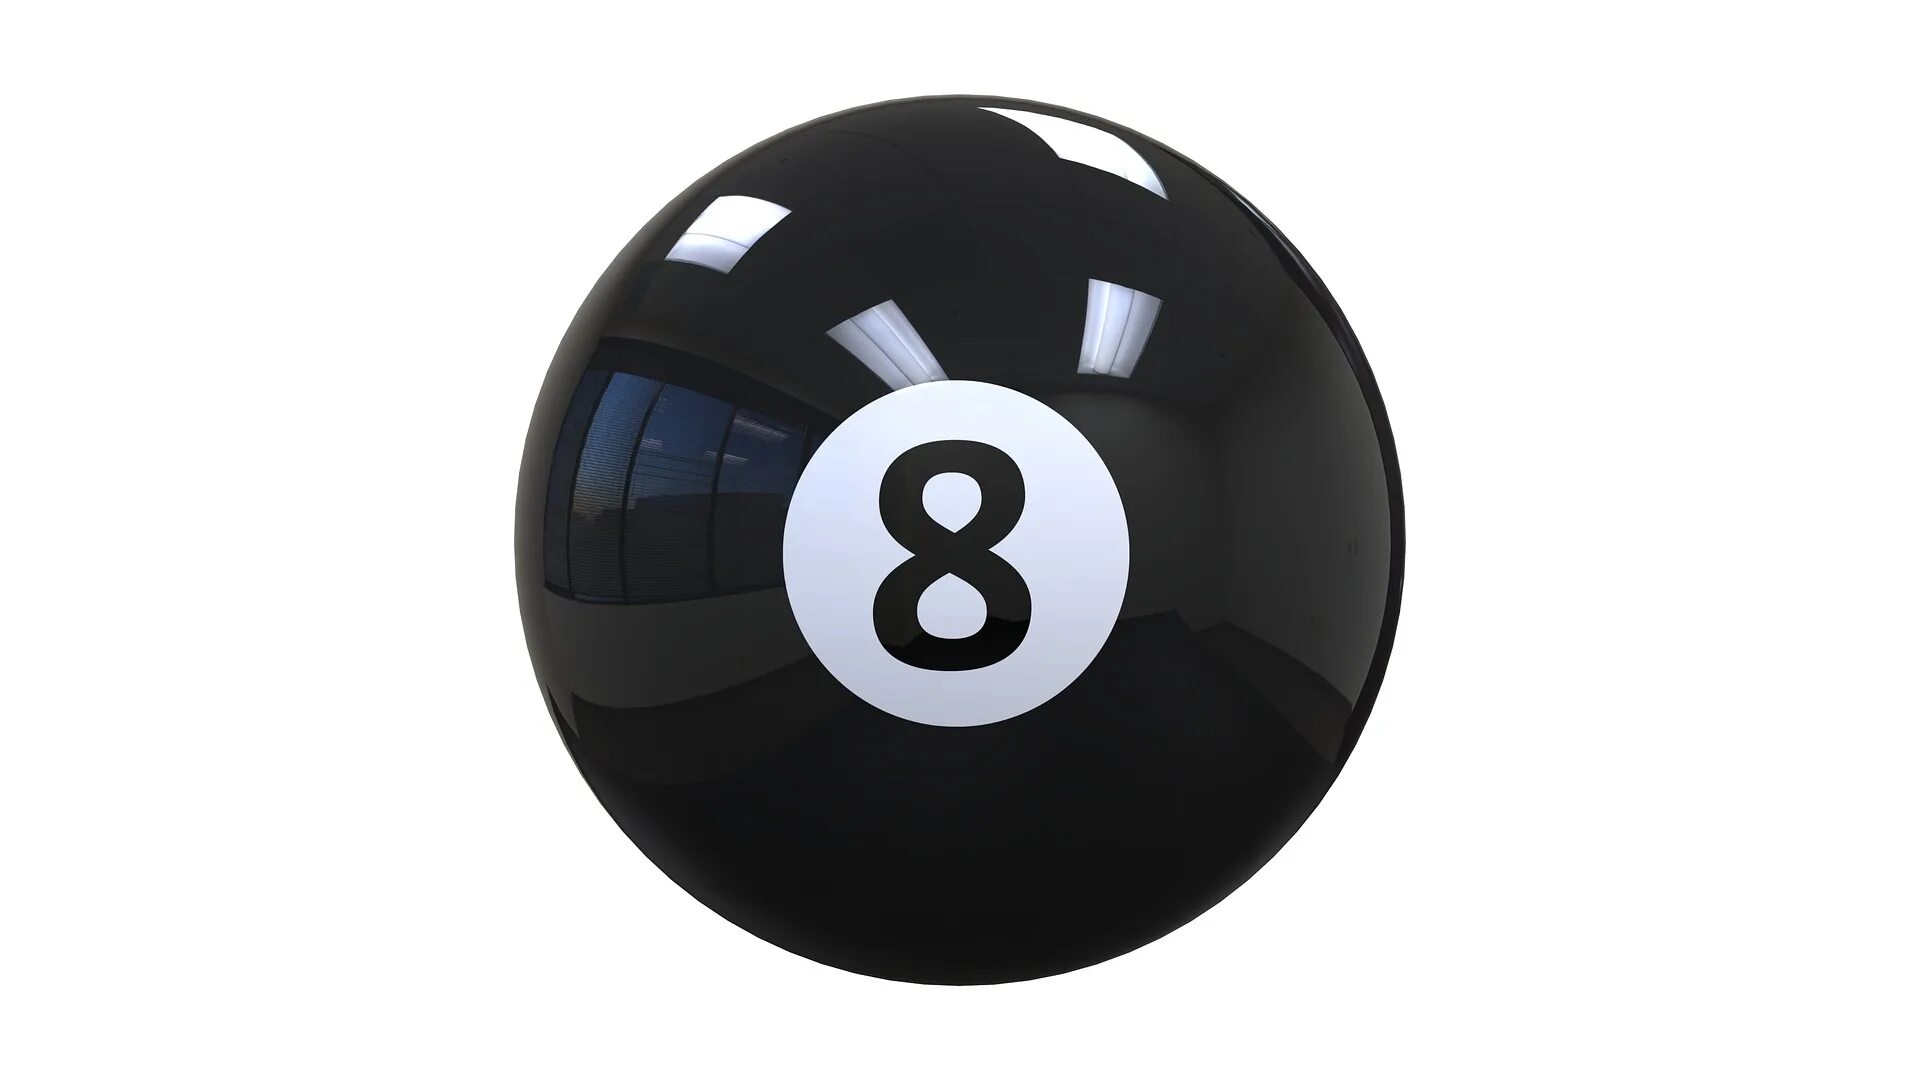 8 на черном шаре. Бильярд "8 Ball Pool". Шар для бильярда 8. Бильярдный шар 8 вектор. Бильярдный шар 8 Fallout 3.